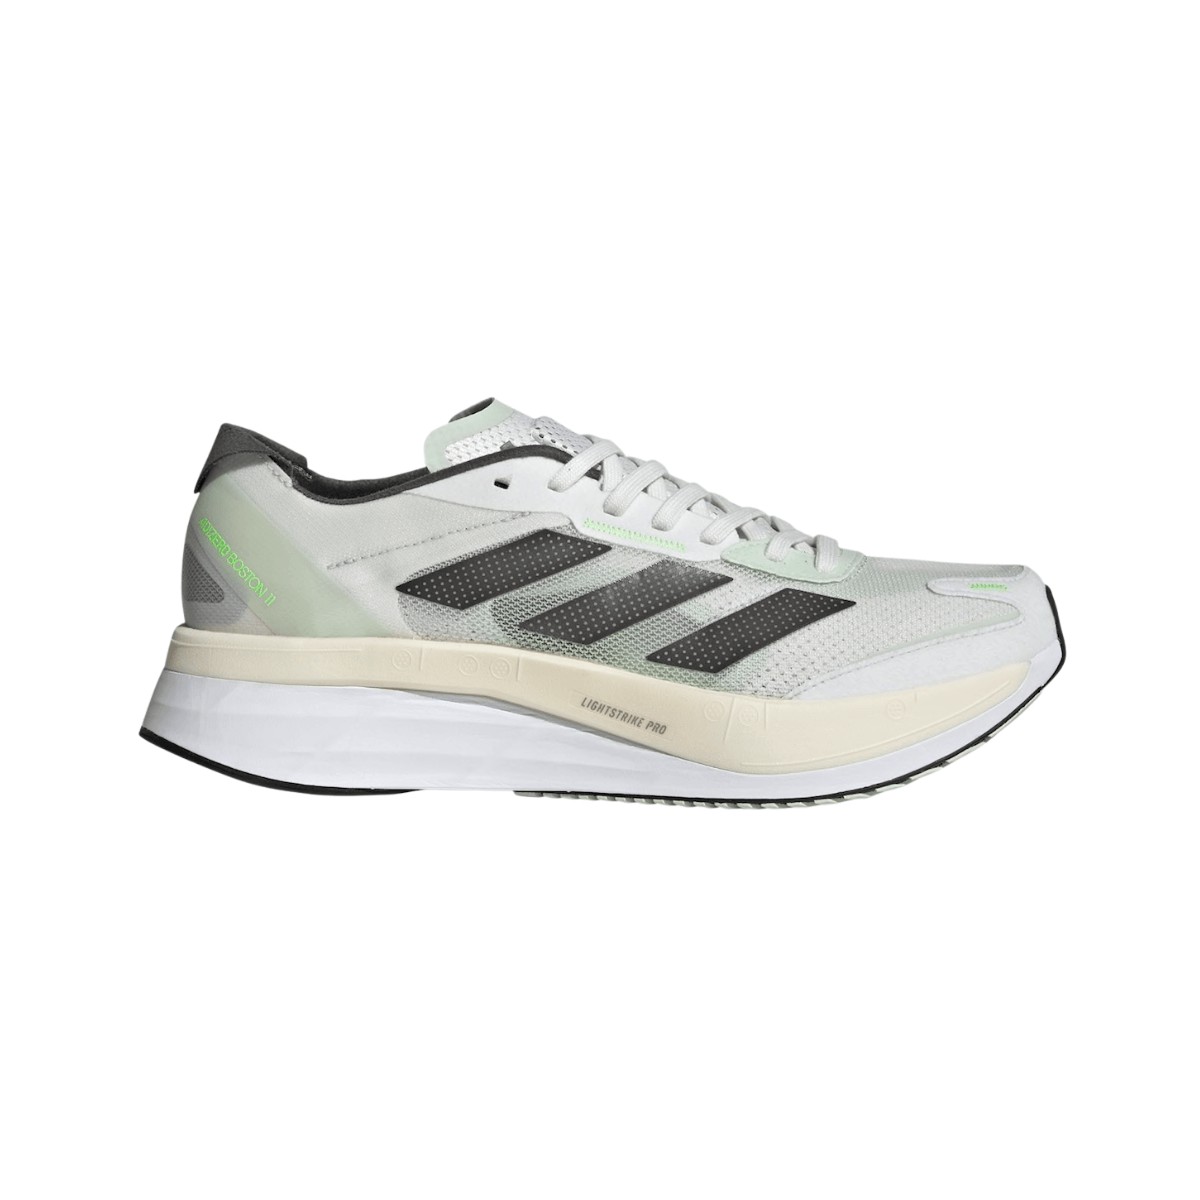 Adidas Adizero Boston 11 Shoes White Green AW22, Size UK 8